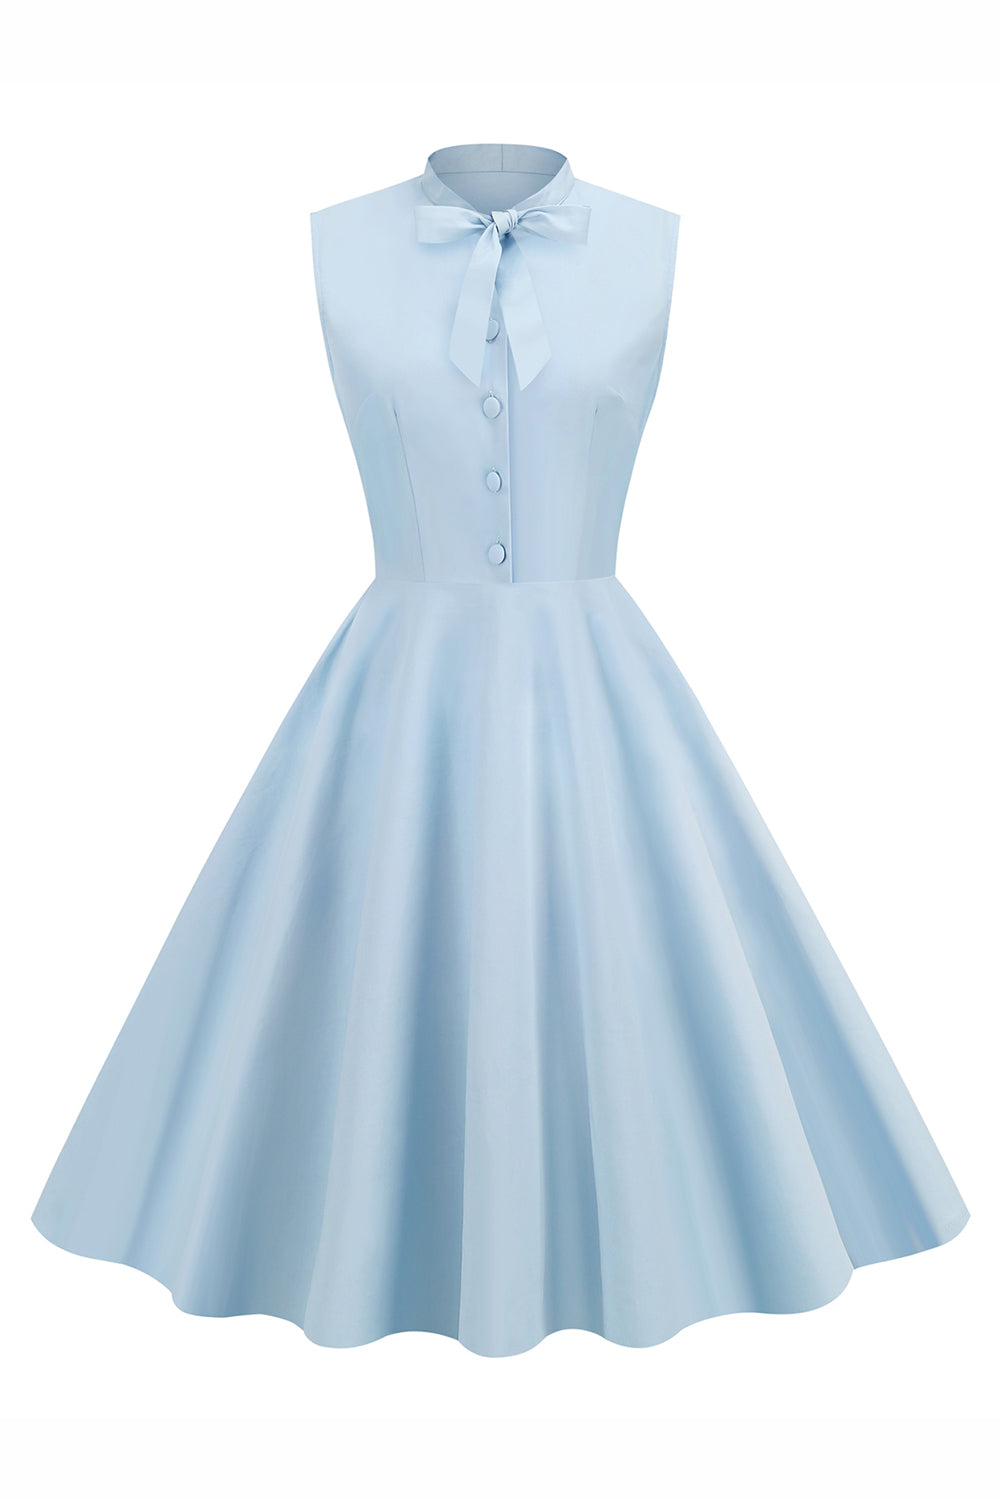 Hellblau Einfarbig A-linie Kleid aus den 1950er Jahren mit Knöpfen